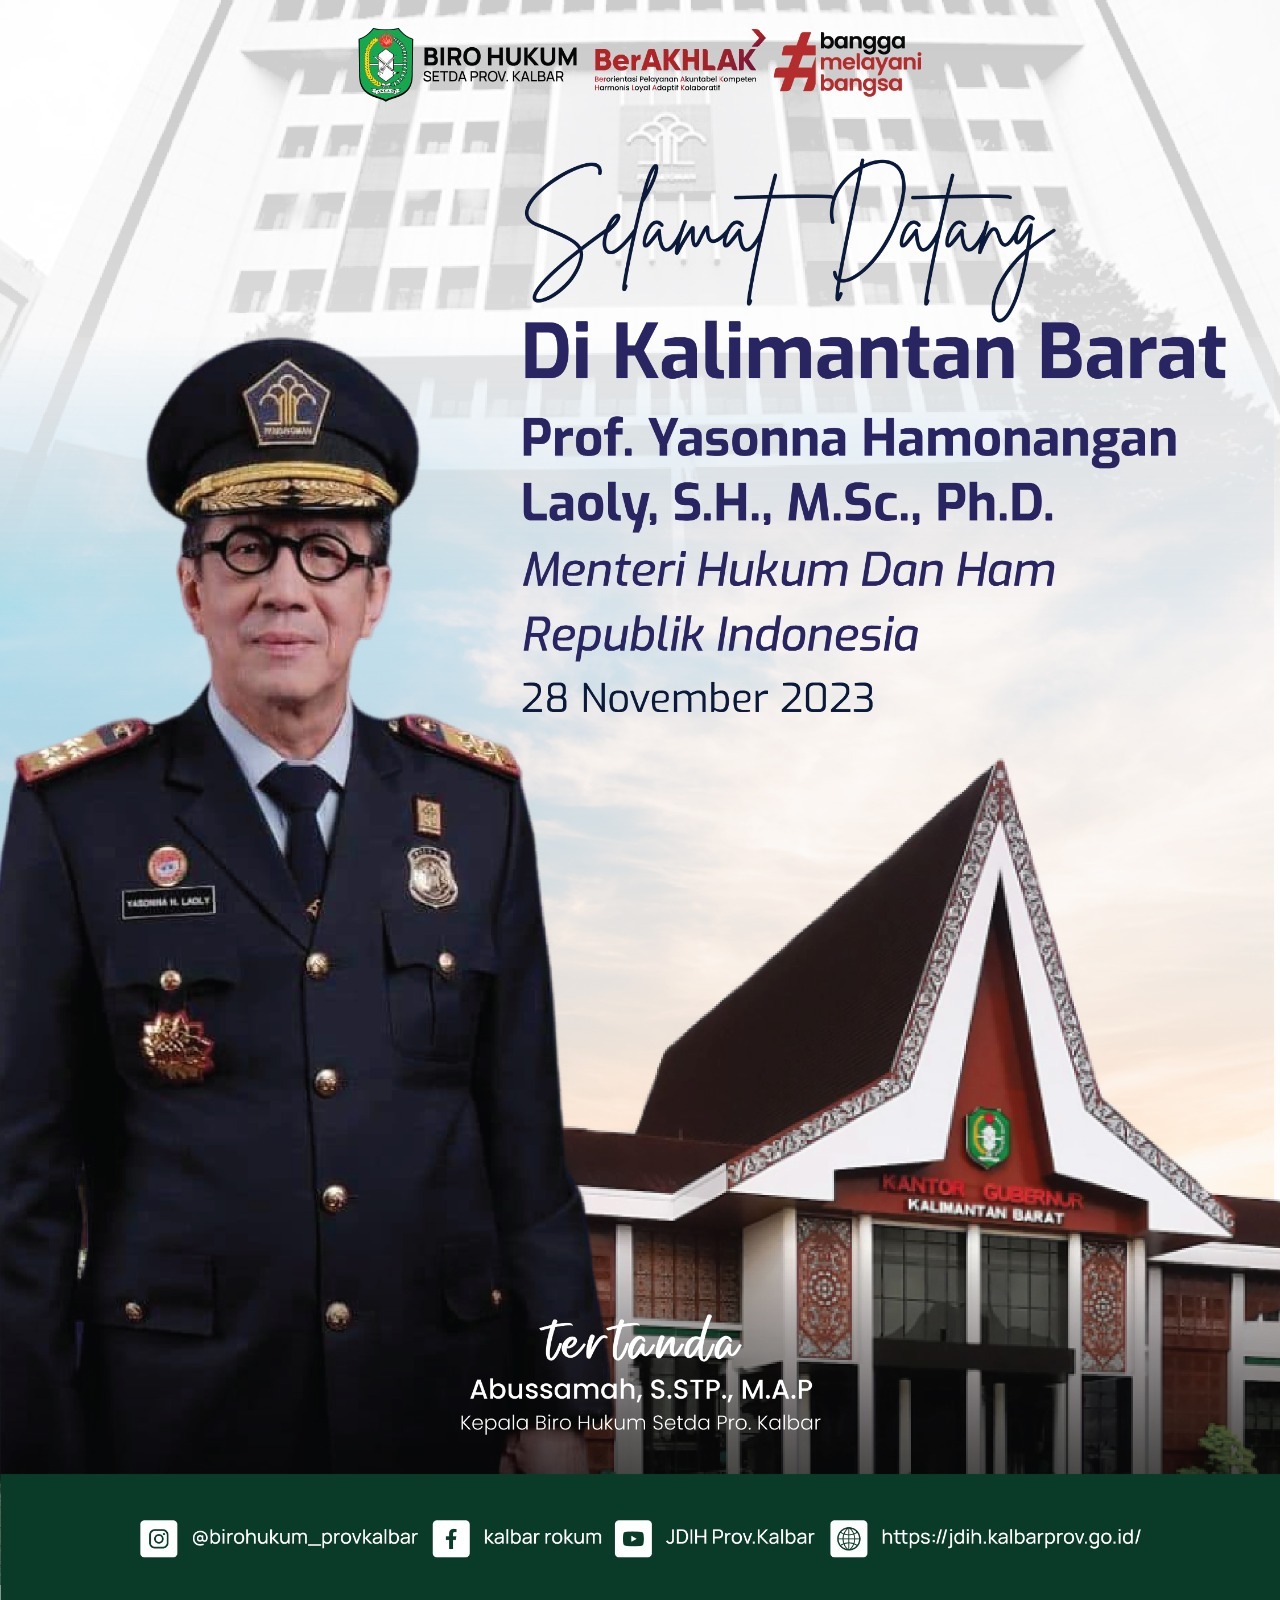 Salamat Datang di Kalimantan Barat Menteri Hukum dan HAM Republik Indonesia